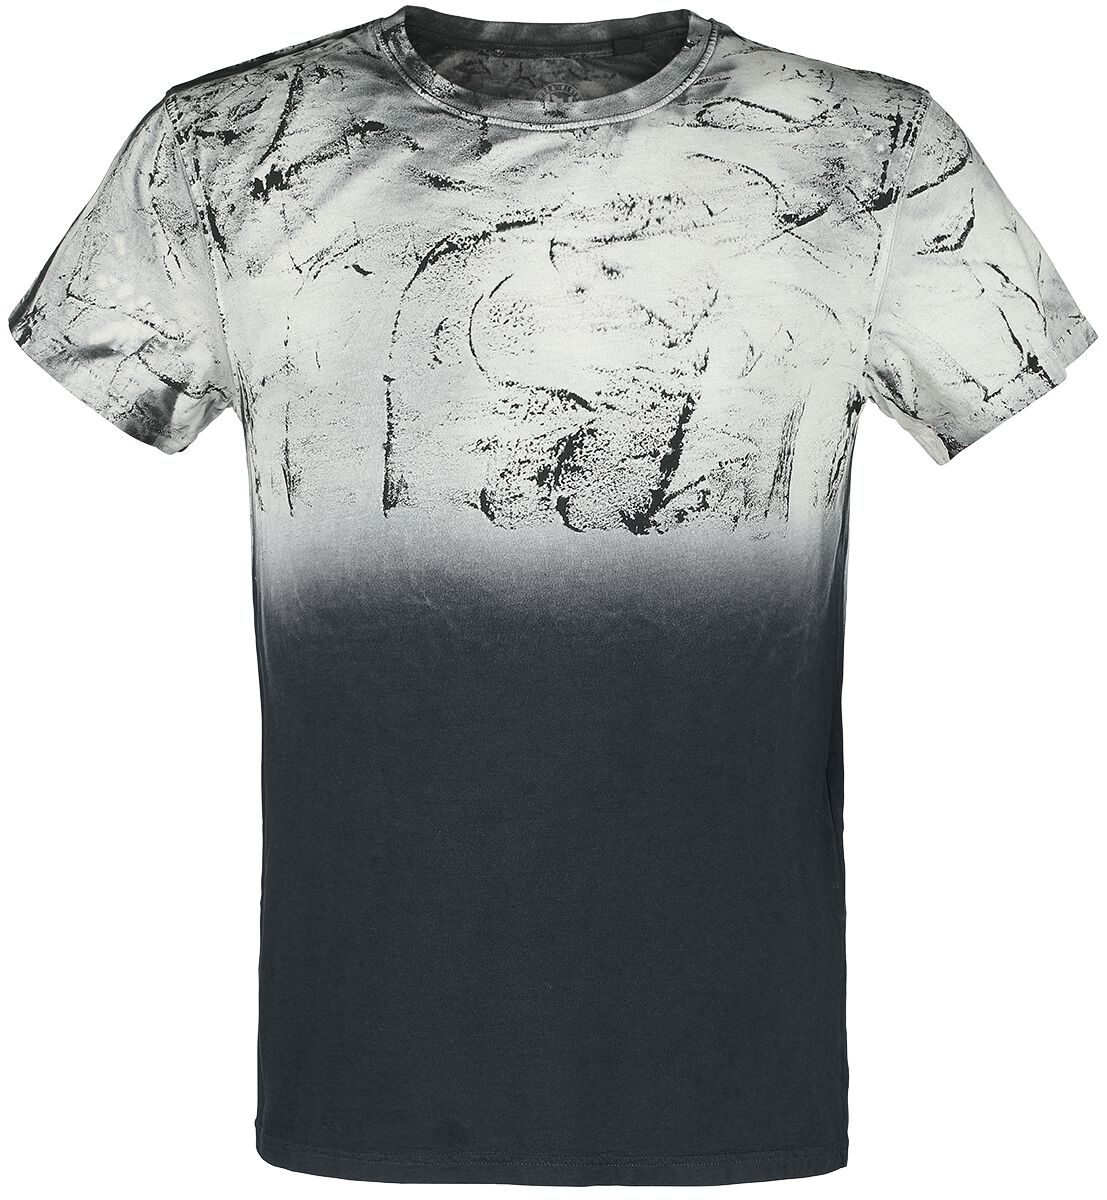 Outer Vision T-Shirt - Man`s T-Shirt Spatolato - S bis 4XL - für Männer - Größe XL - schwarz/grau